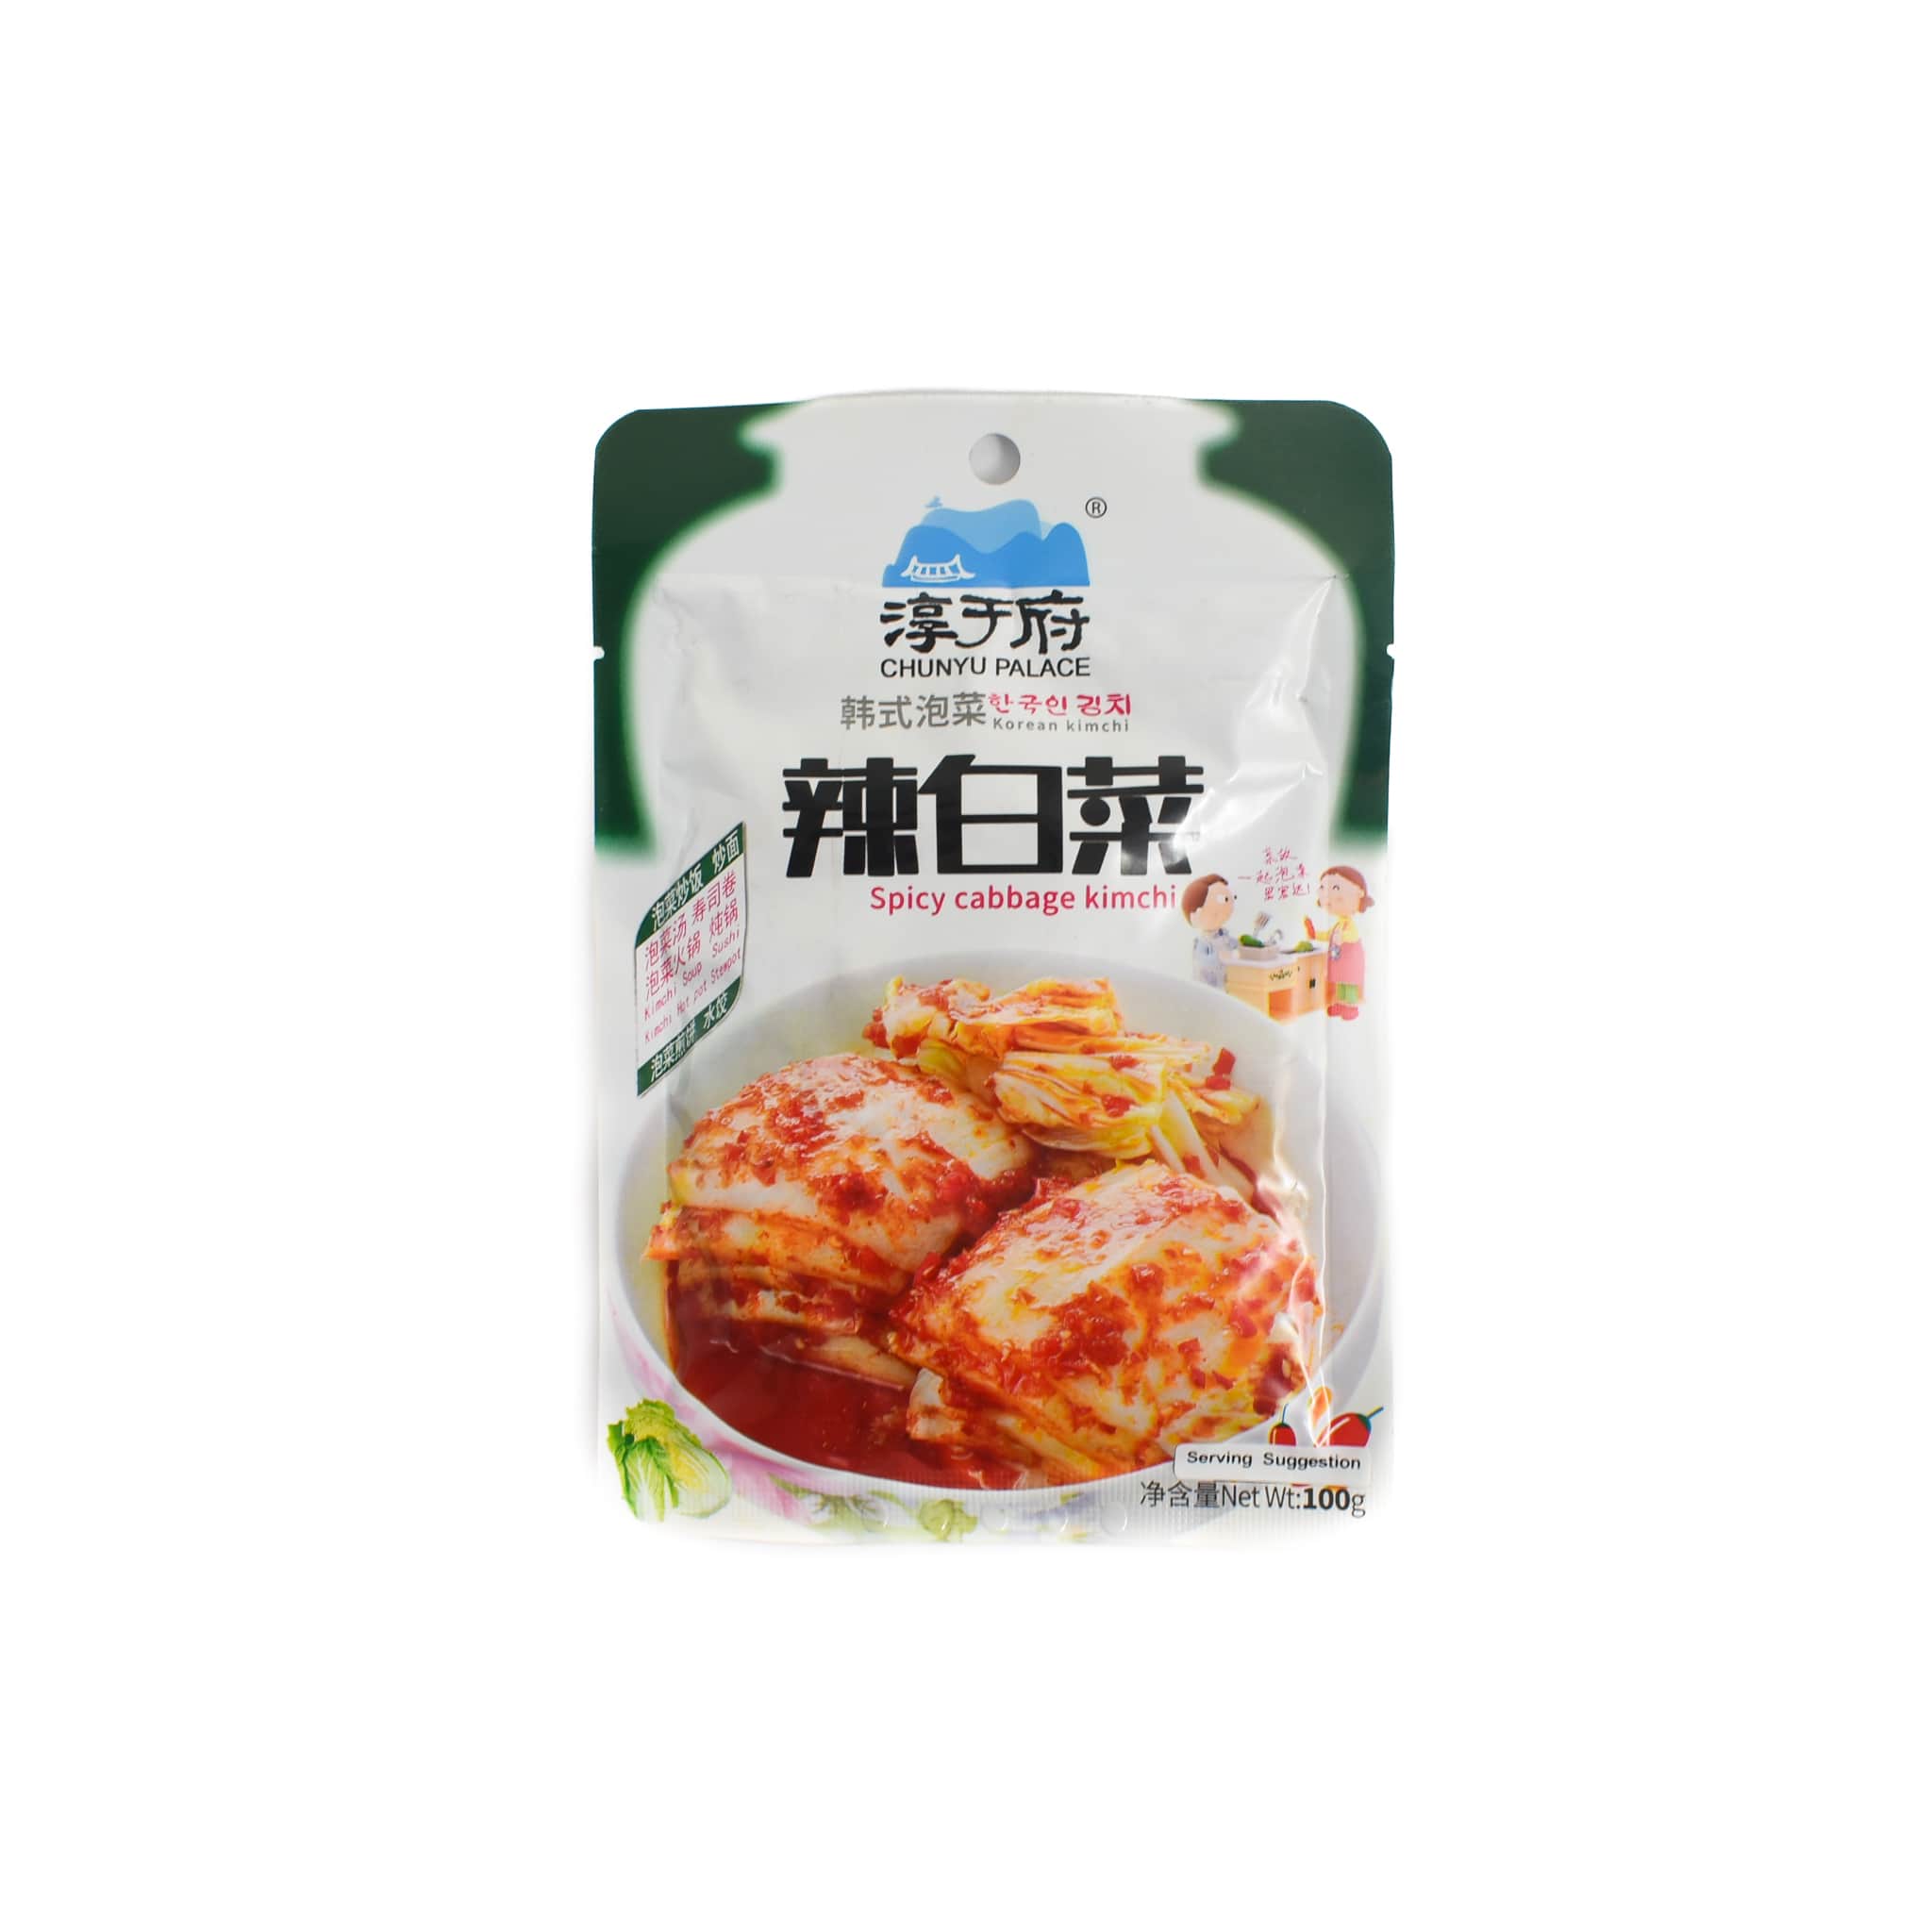 Spicy Cabbage Kimchi, 100g